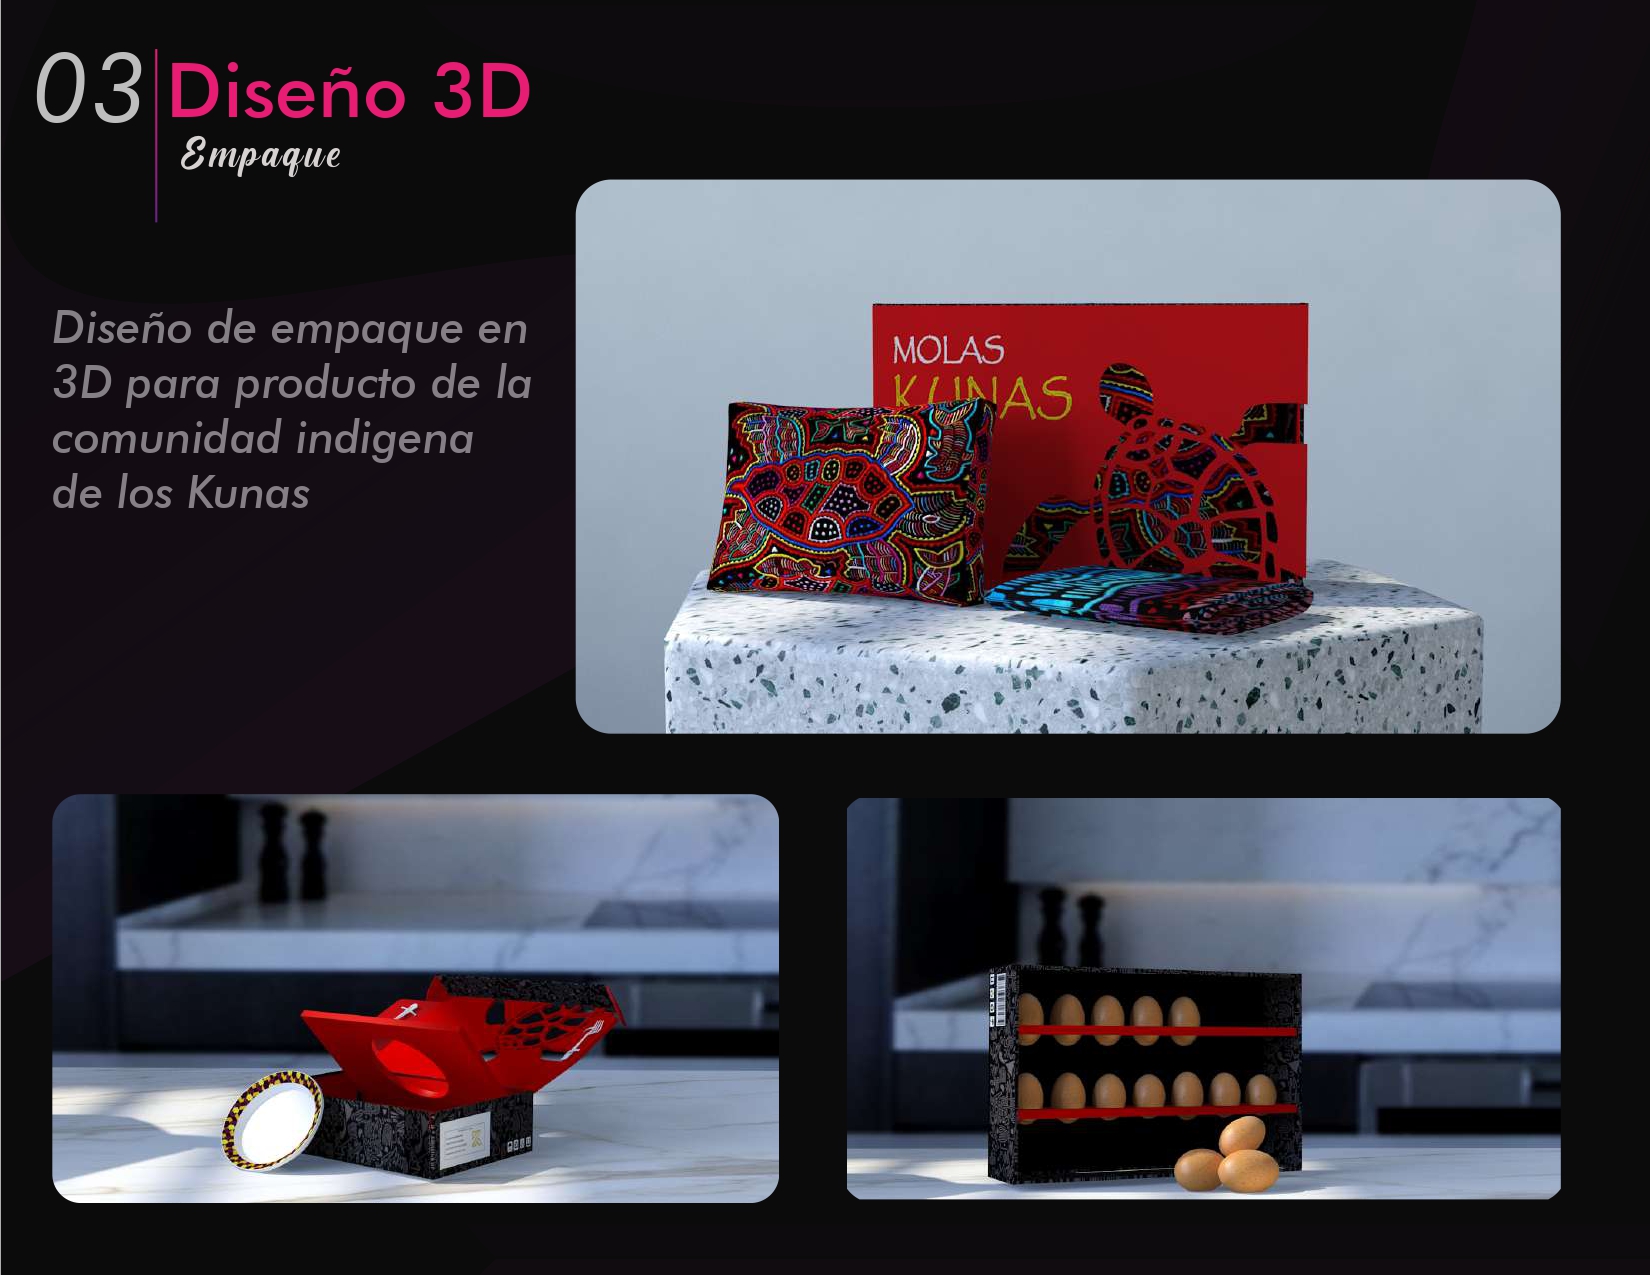 Disefio 3D | 03

Qtand

Stand realizado para la
venta de las molas de la
comunidad indigena de

los Kunas